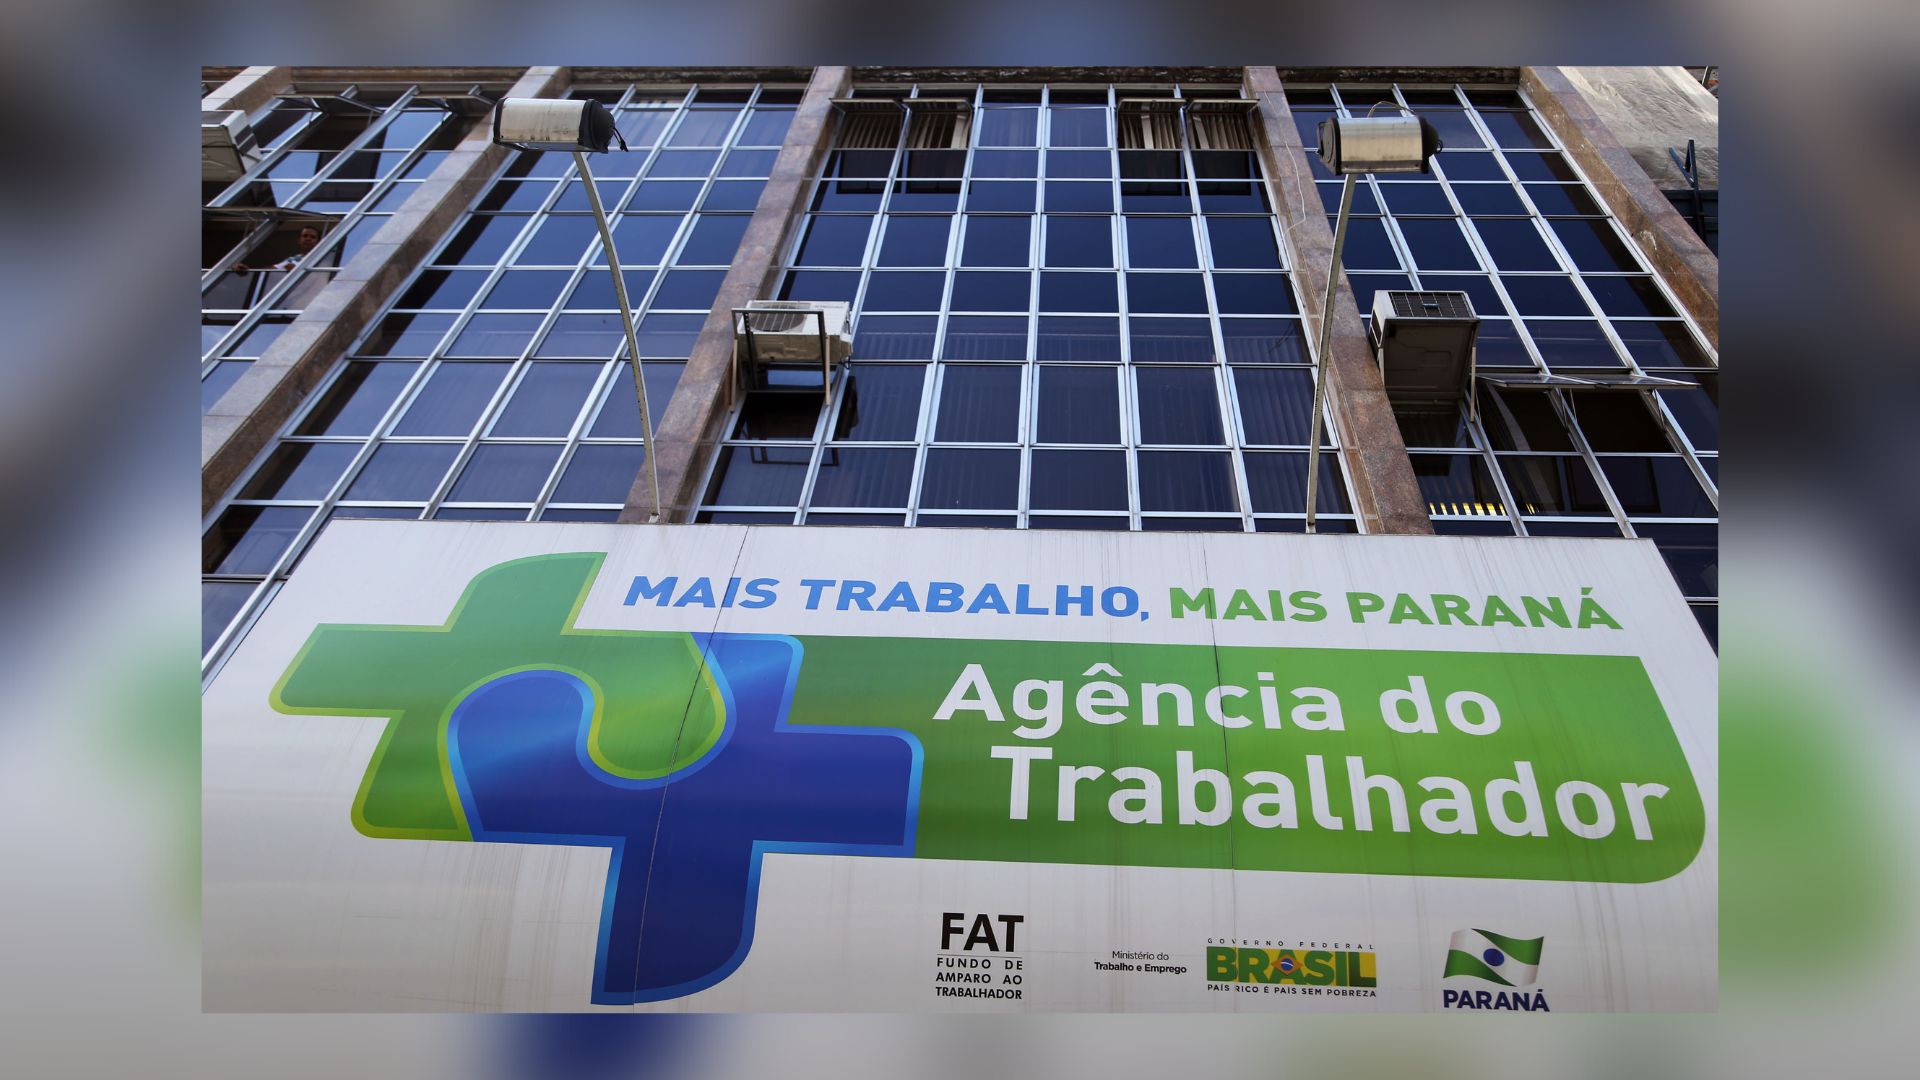 Paraná Tem Mais De 13 Mil Vagas De Emprego Disponíveis 4023